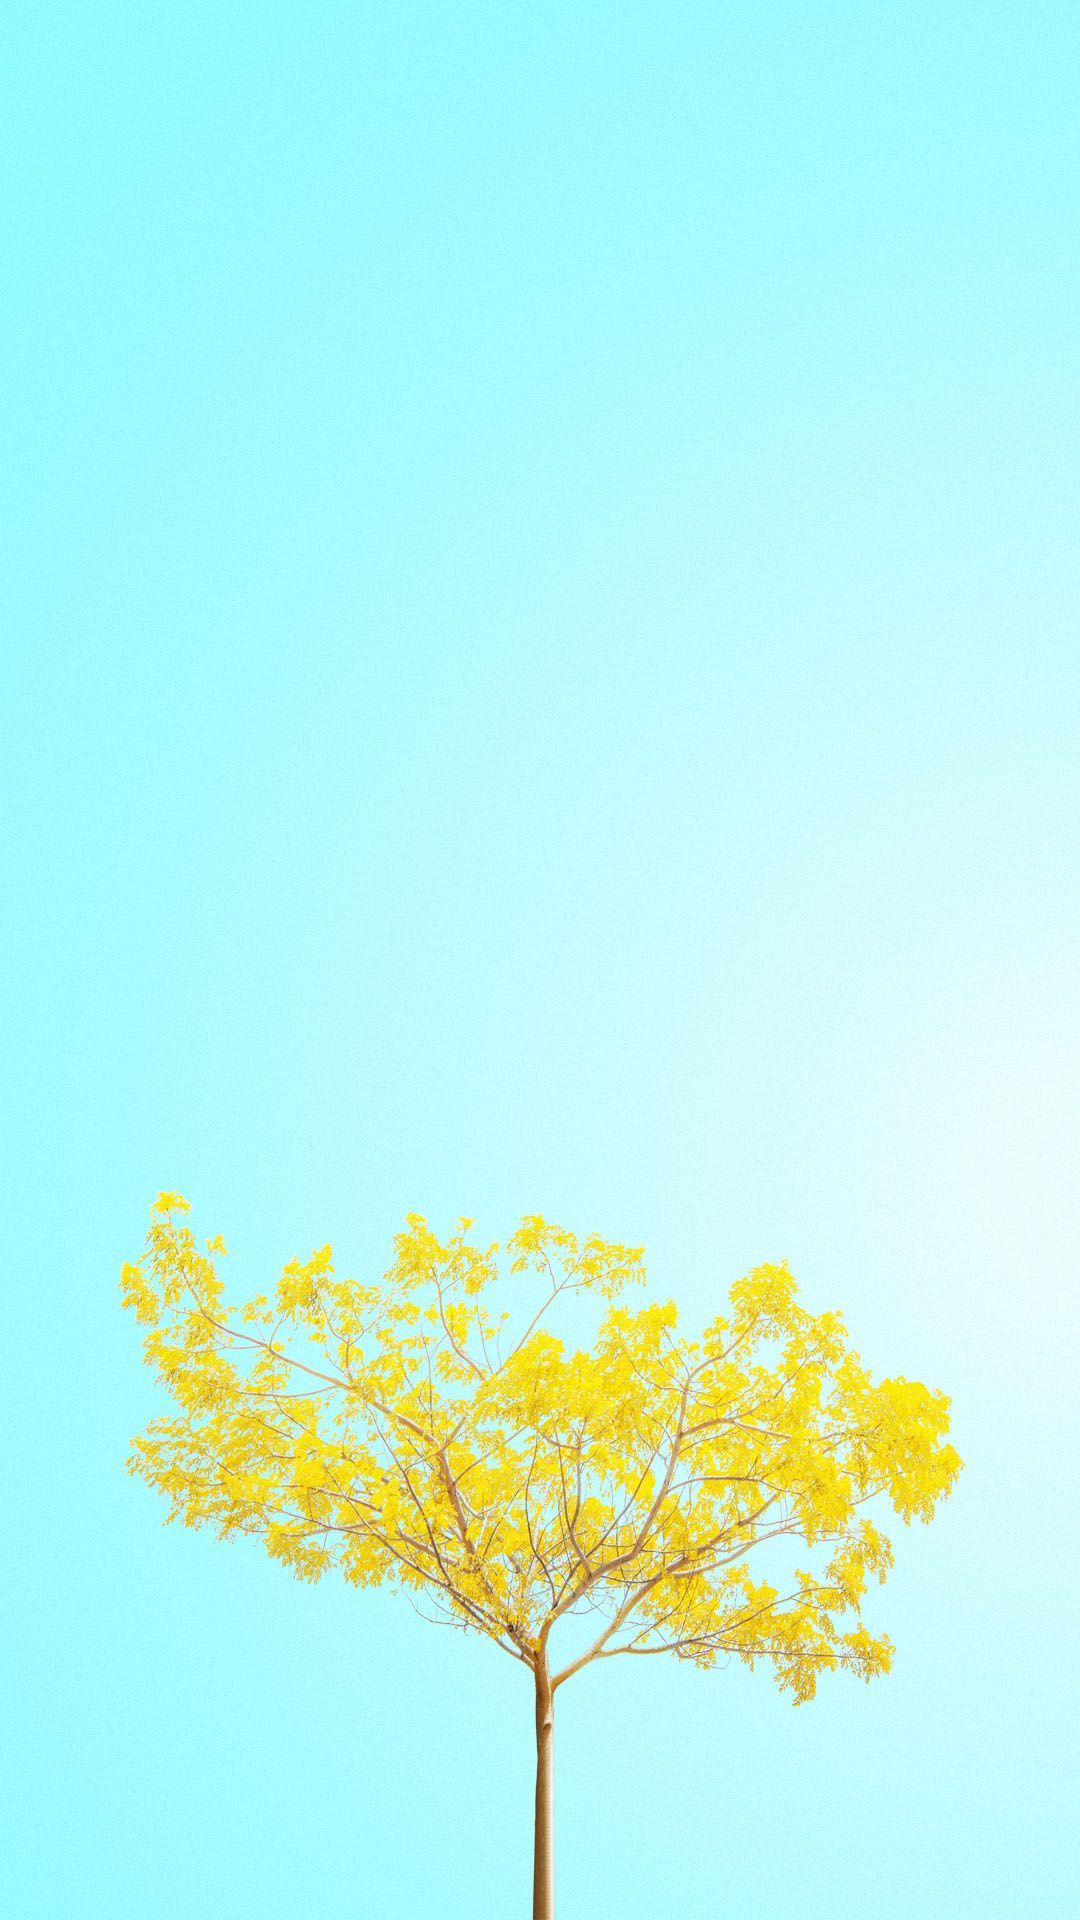 Minimalist Spring Wallpaper HD Free download